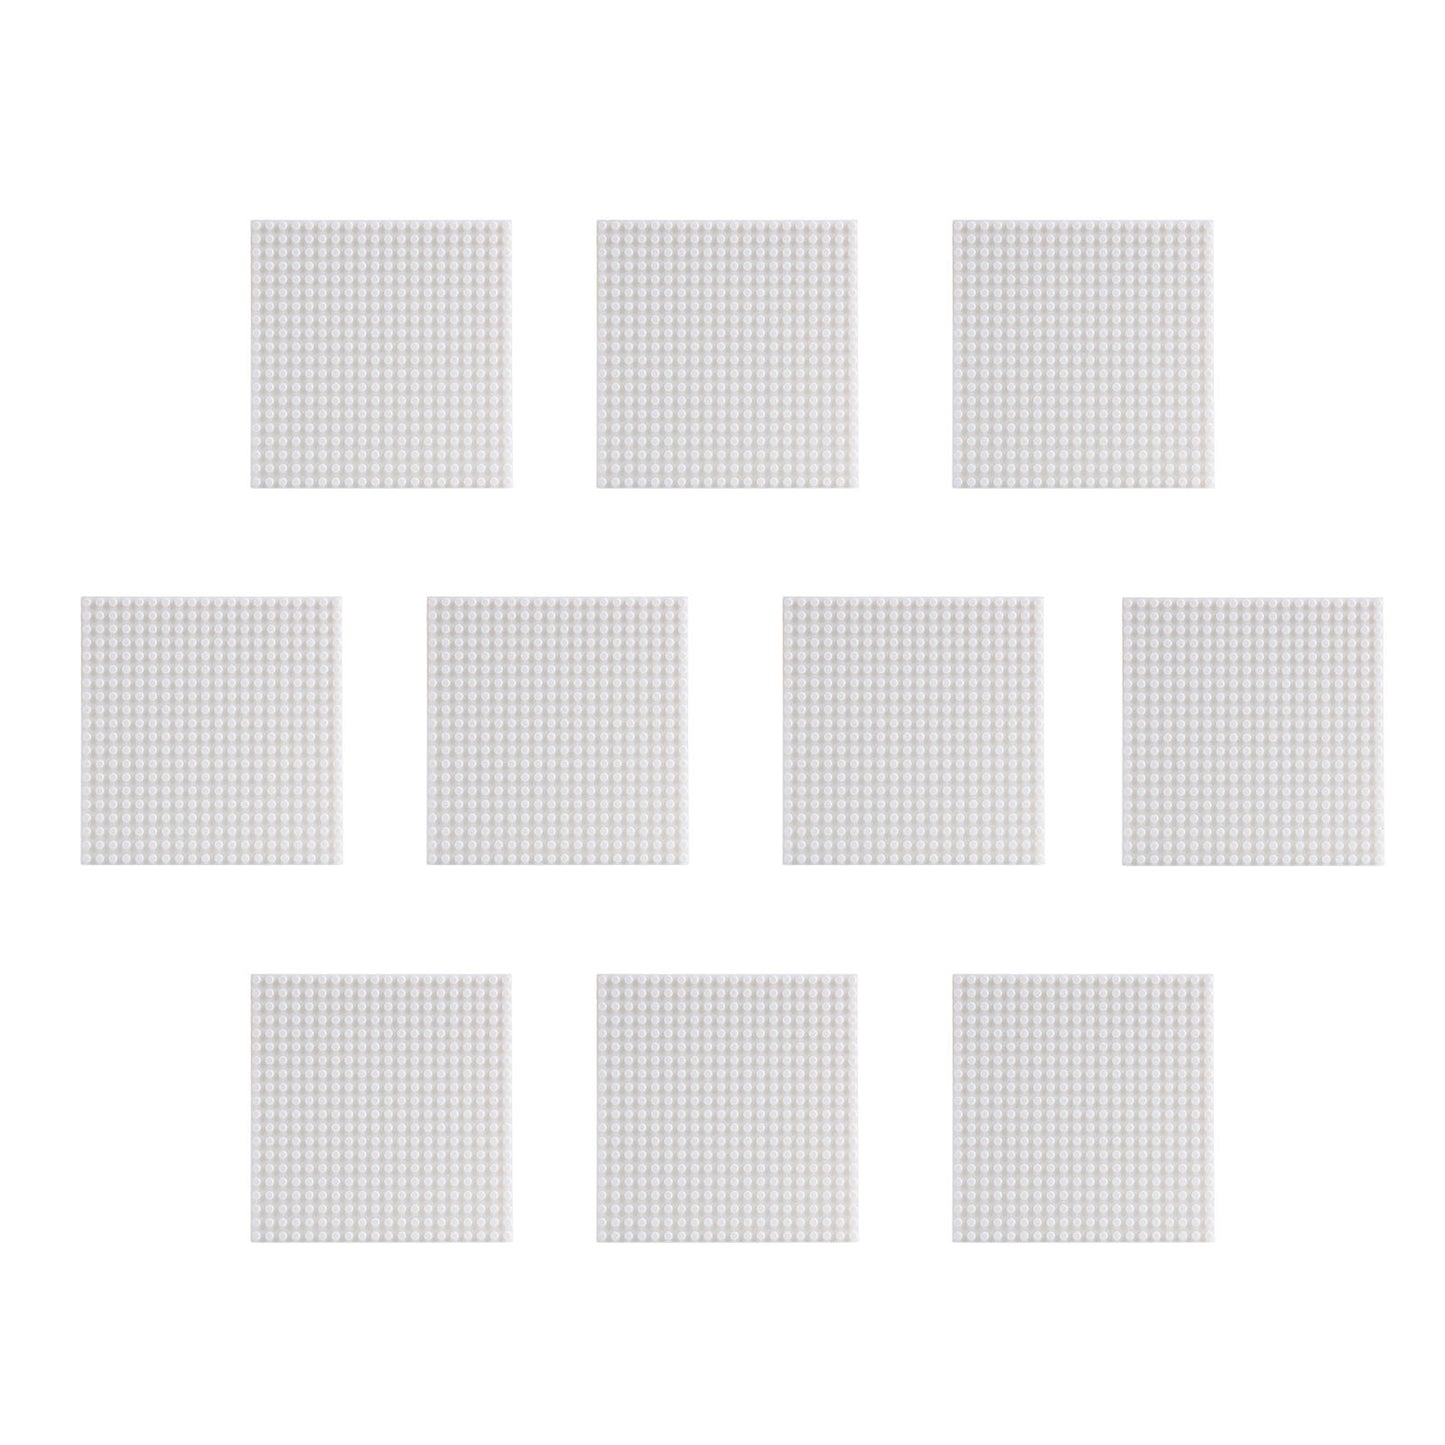 Larcele 10 Pieces Mini Building Blocks Base Plates JMDB-02 (Square,White)